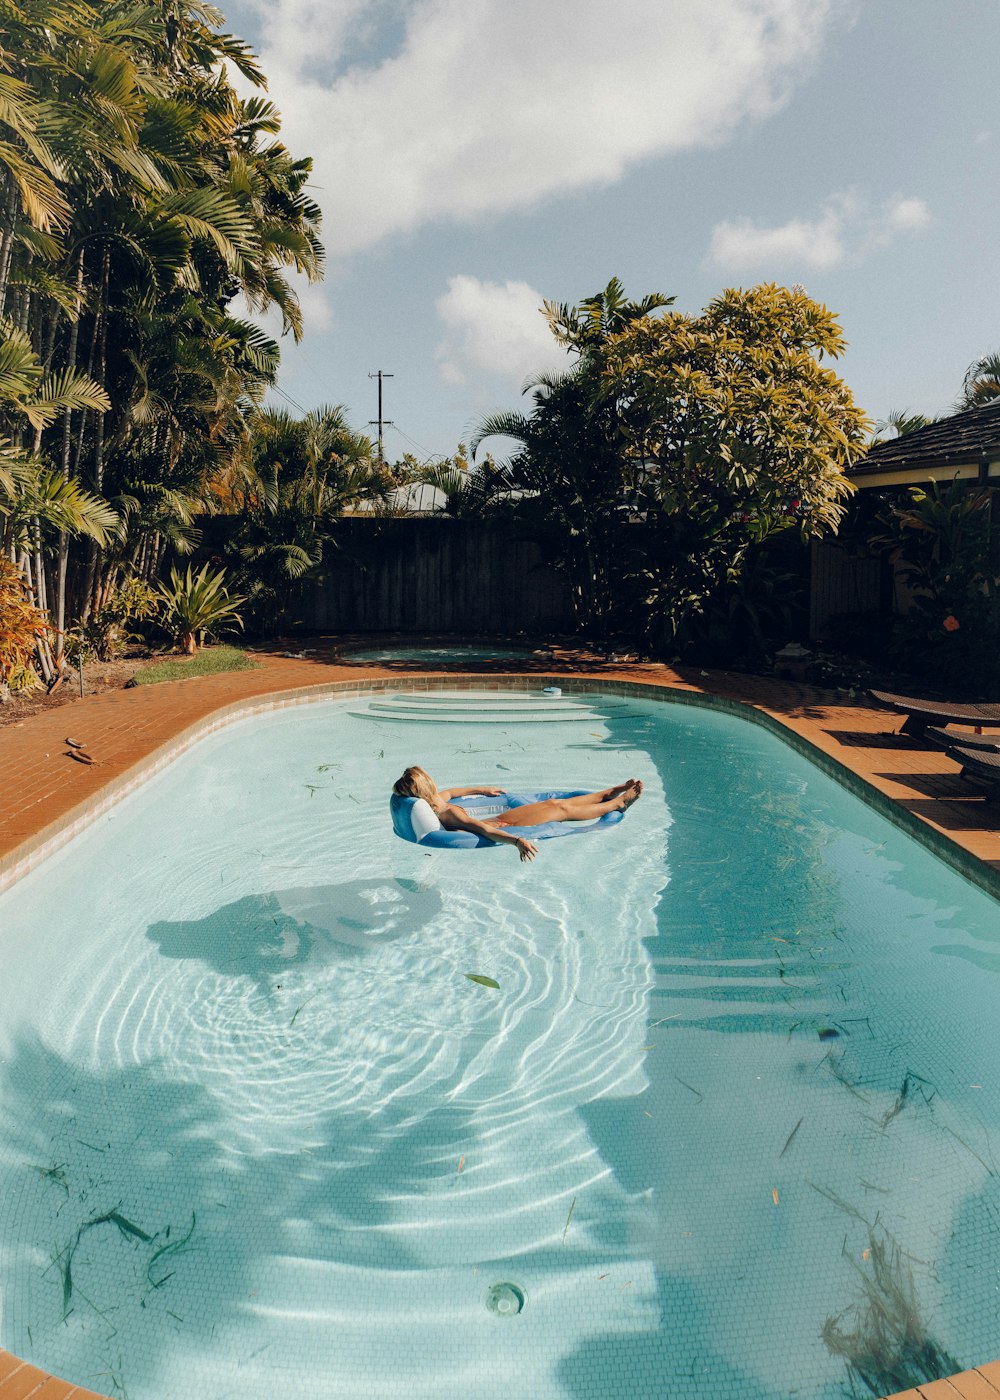 woman in blue bikini swimming on pool during daytime